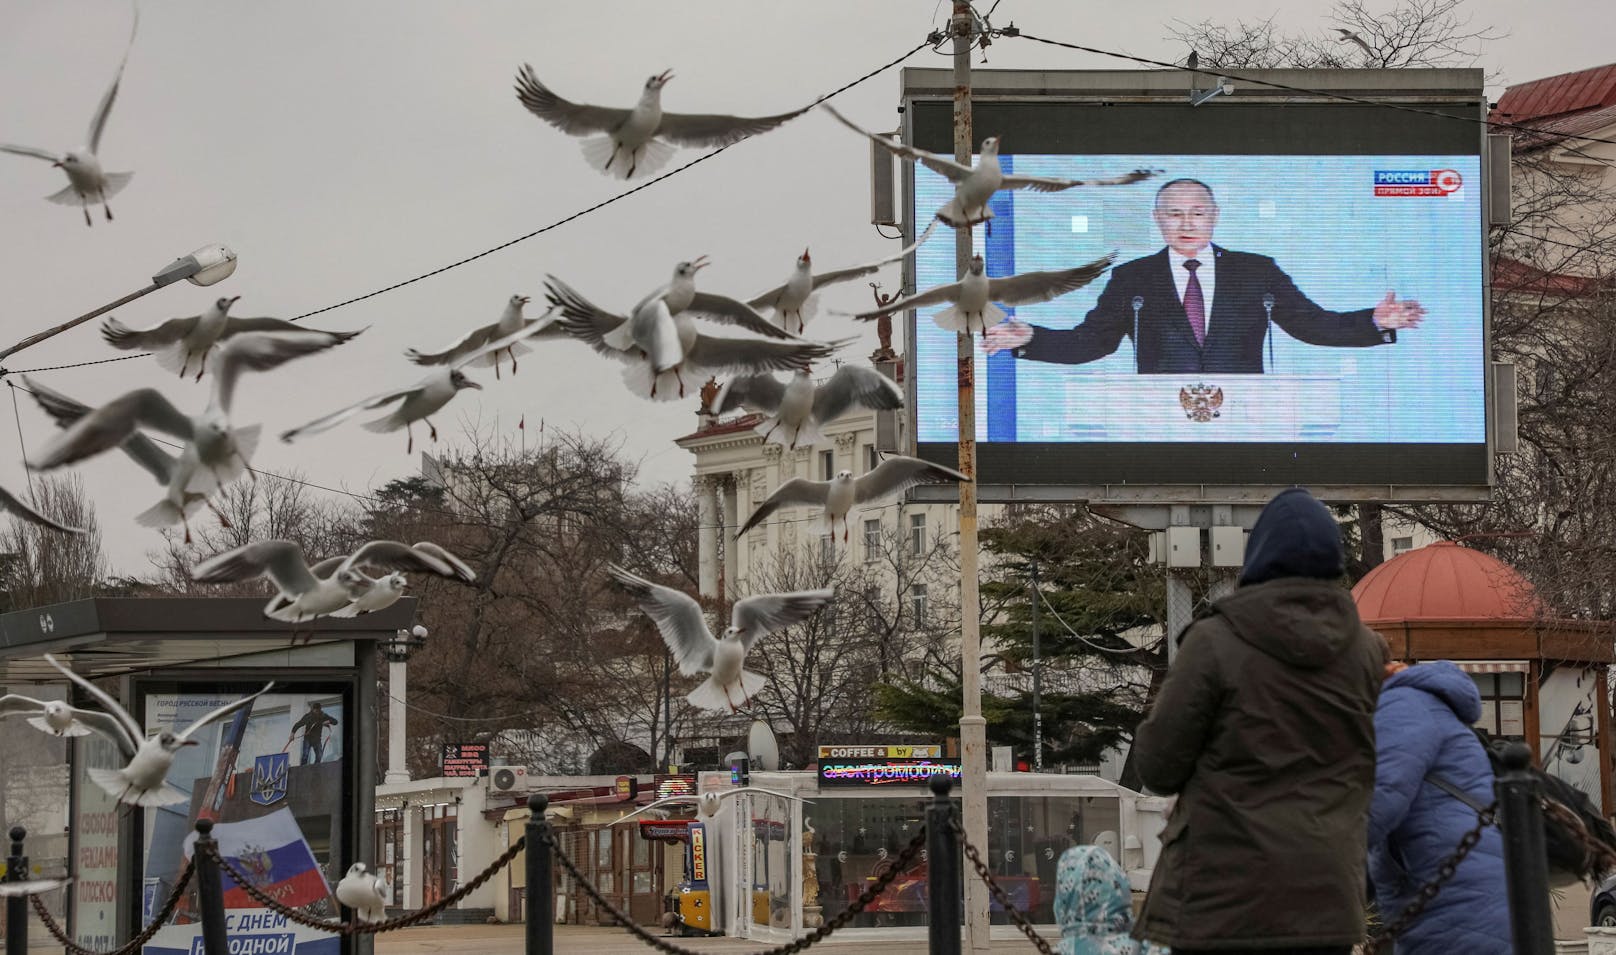 Übertragung von Wladimir Putin bei seiner Jahresrede auf einen Bildschirm in Sewastopol auf der Krim.